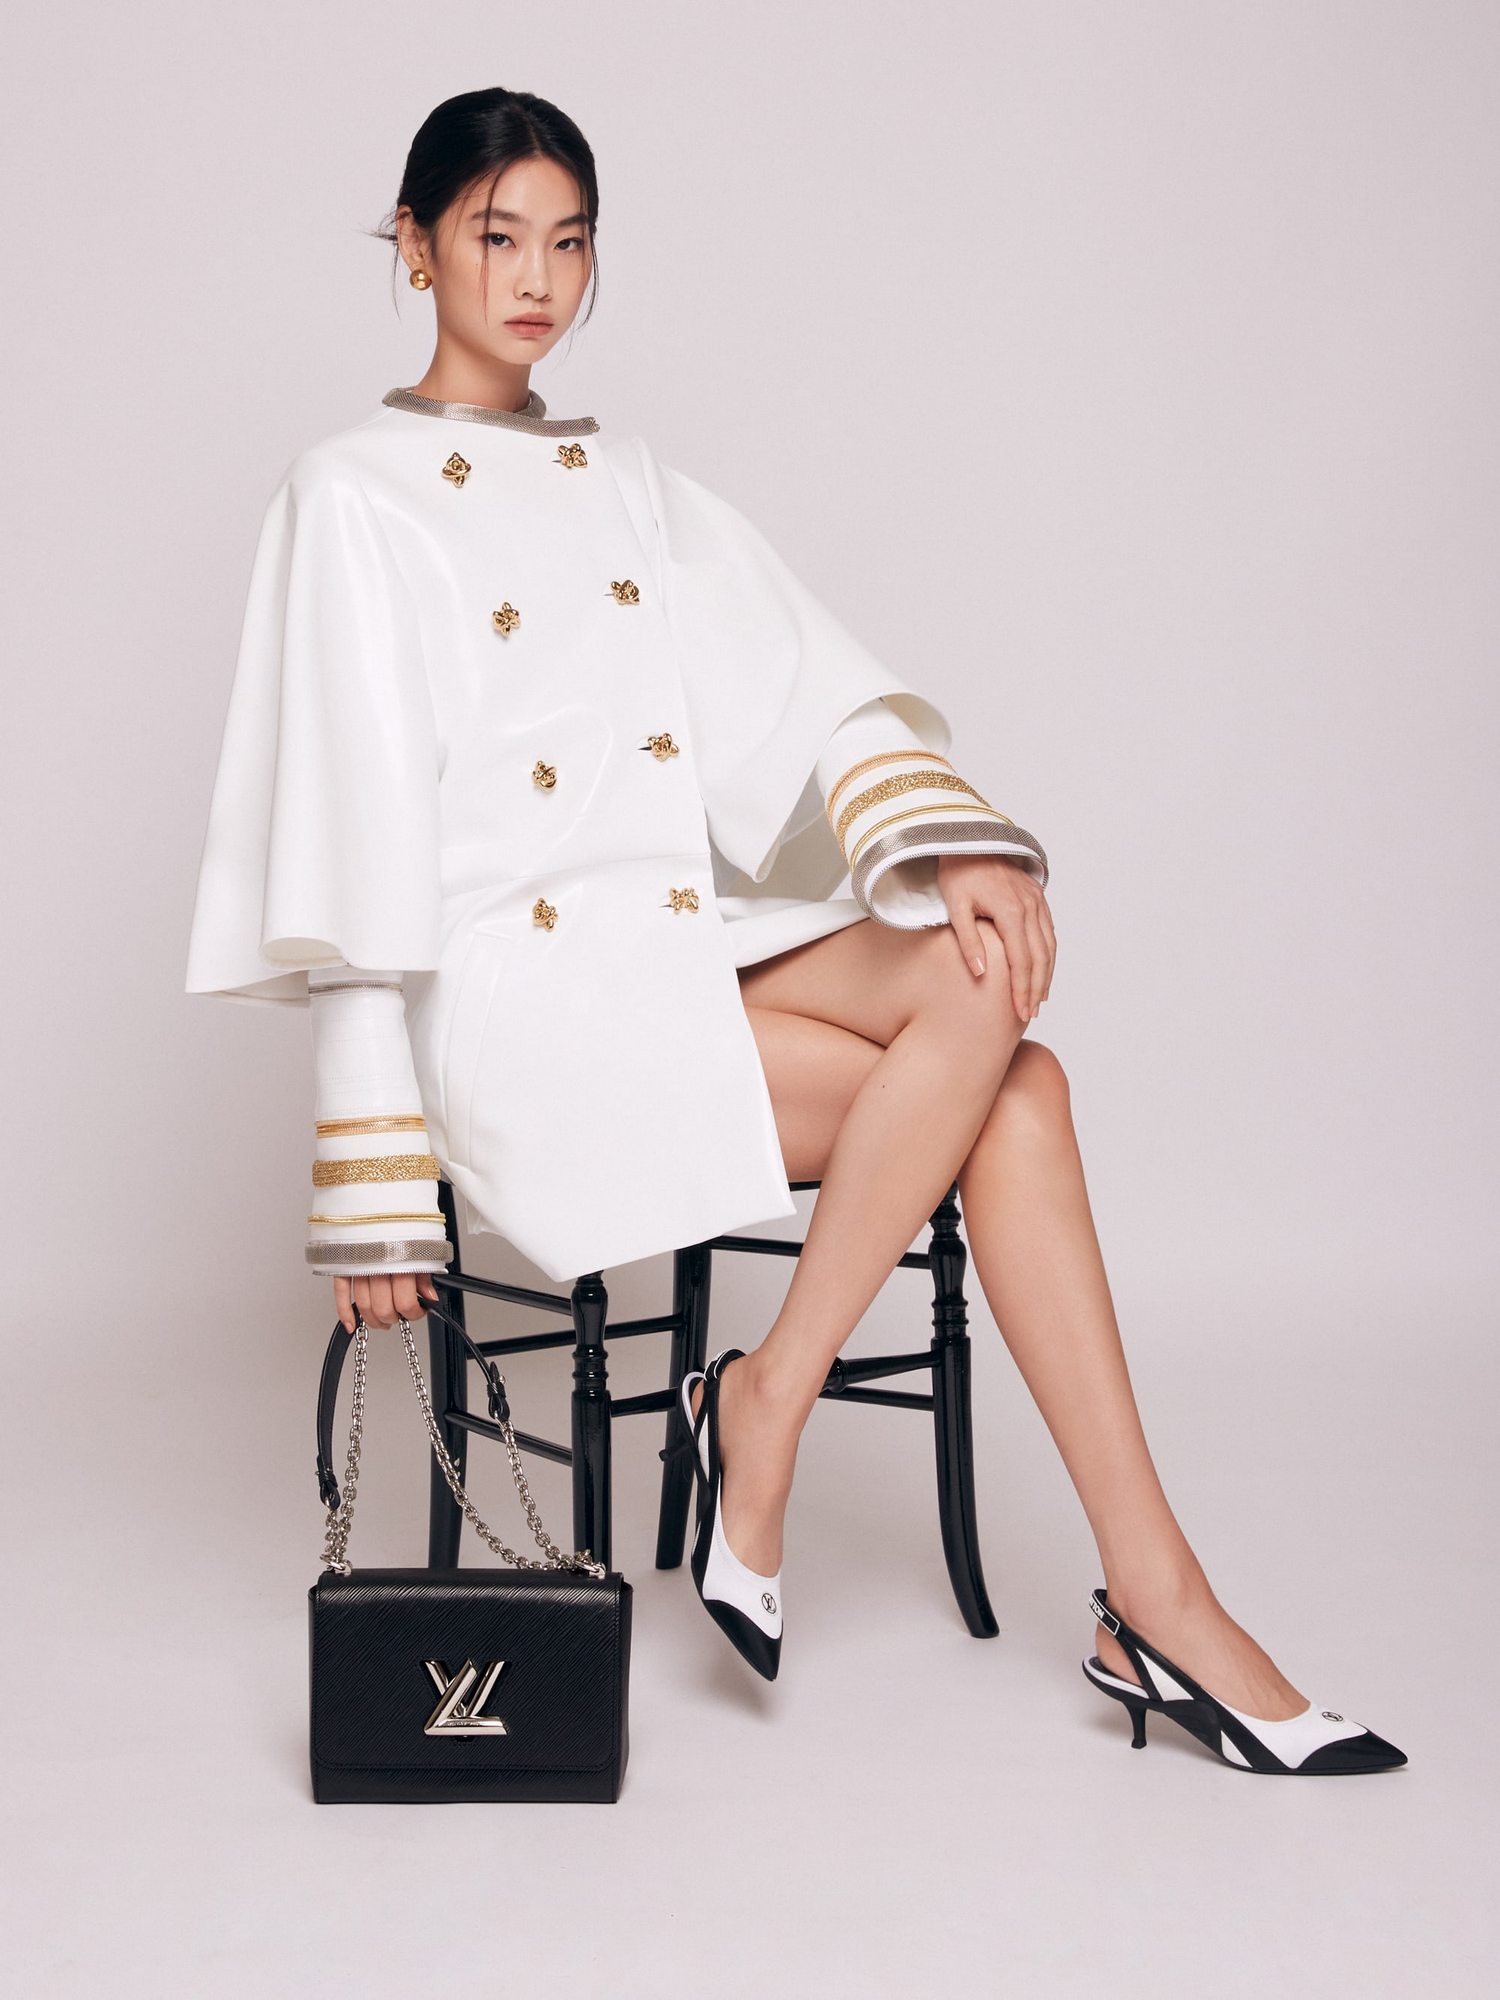 Berkah \'Squid Game\', Jung Ho Yeon Didapuk Jadi Global Ambassador untuk Rumah Mode Louis Vuitton